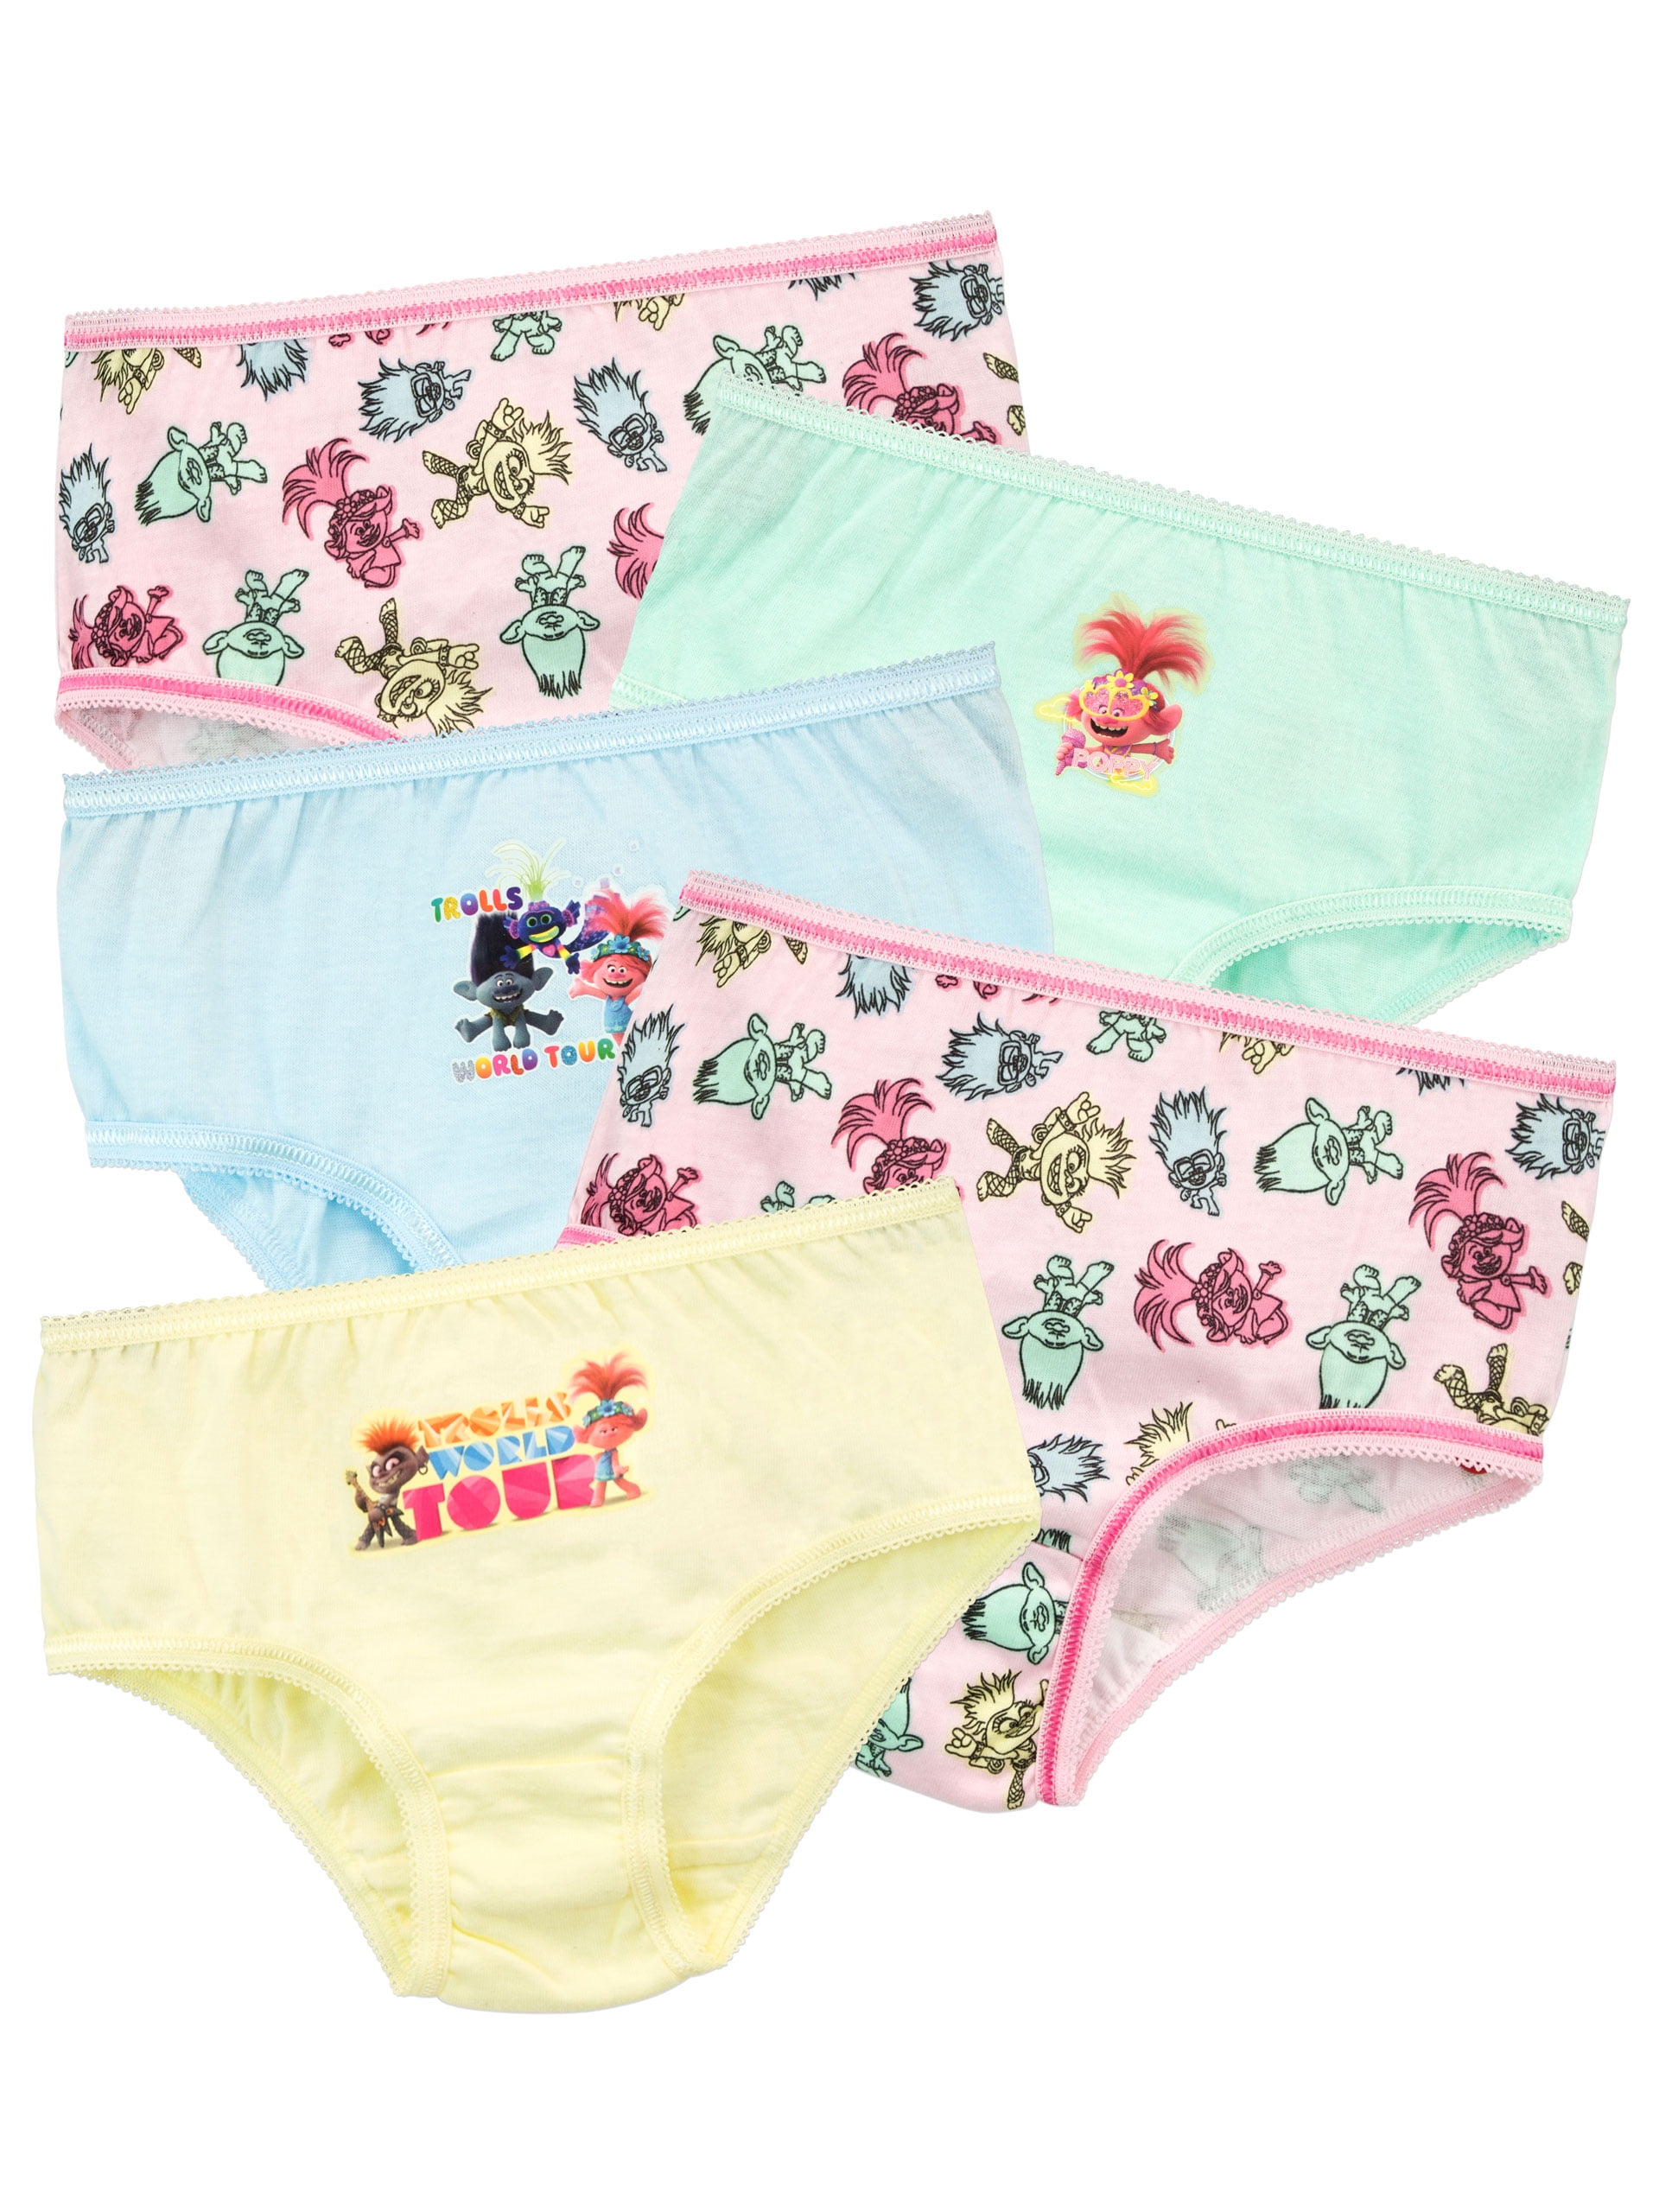 DreamWorks Girls Trolls Underwear 5 Pack Pink Sizes 3T - 10